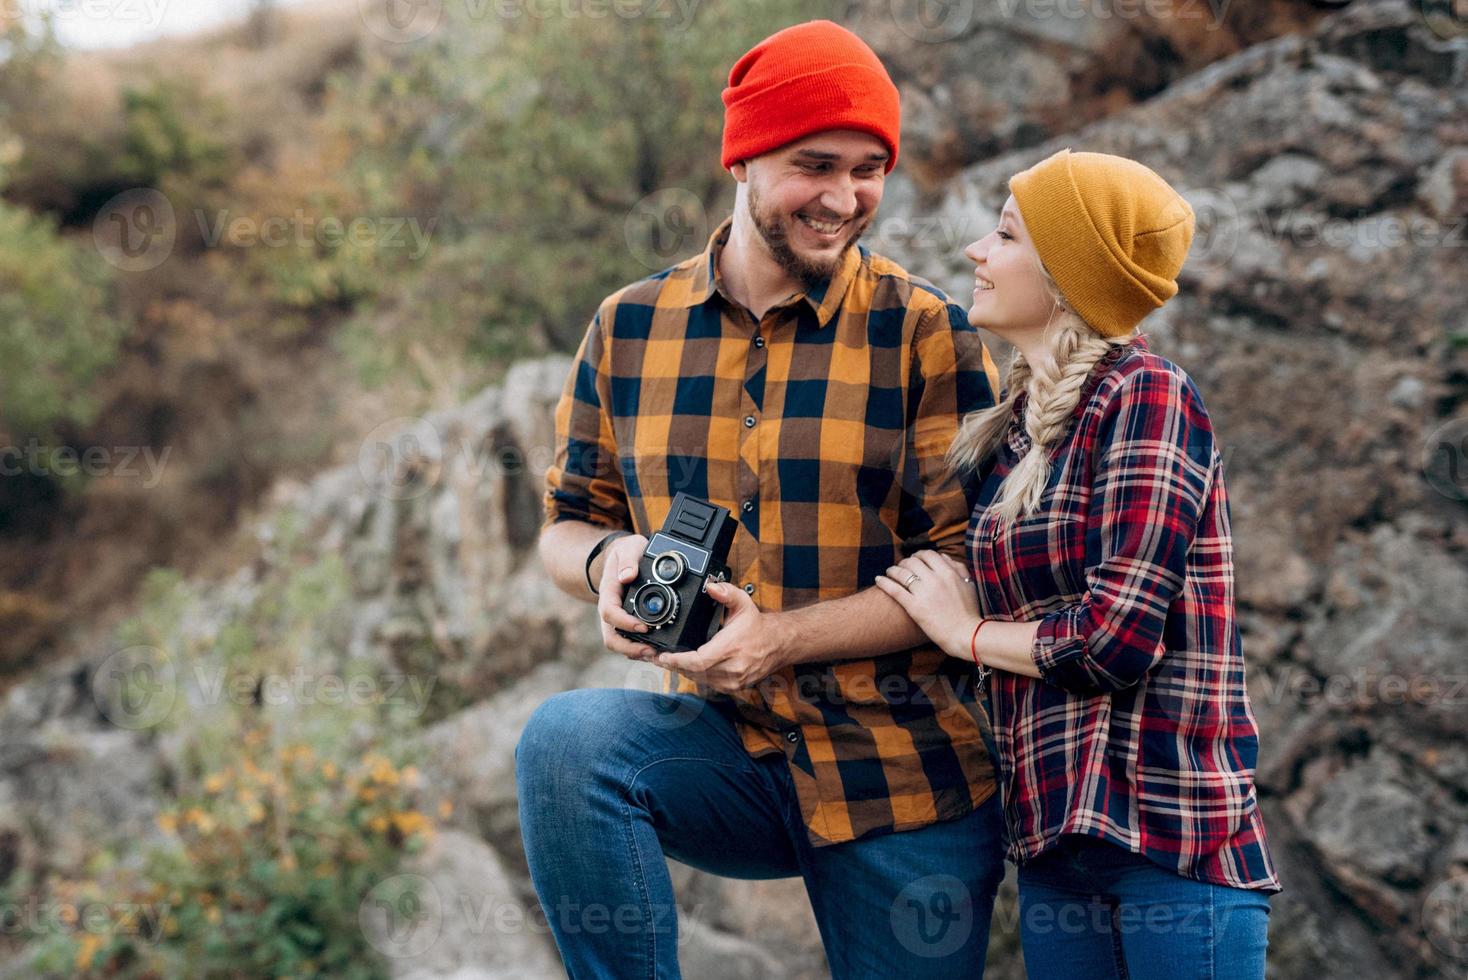 kale man met een baard en een blond meisje in lichte hoeden fotograferen met een oude camera foto